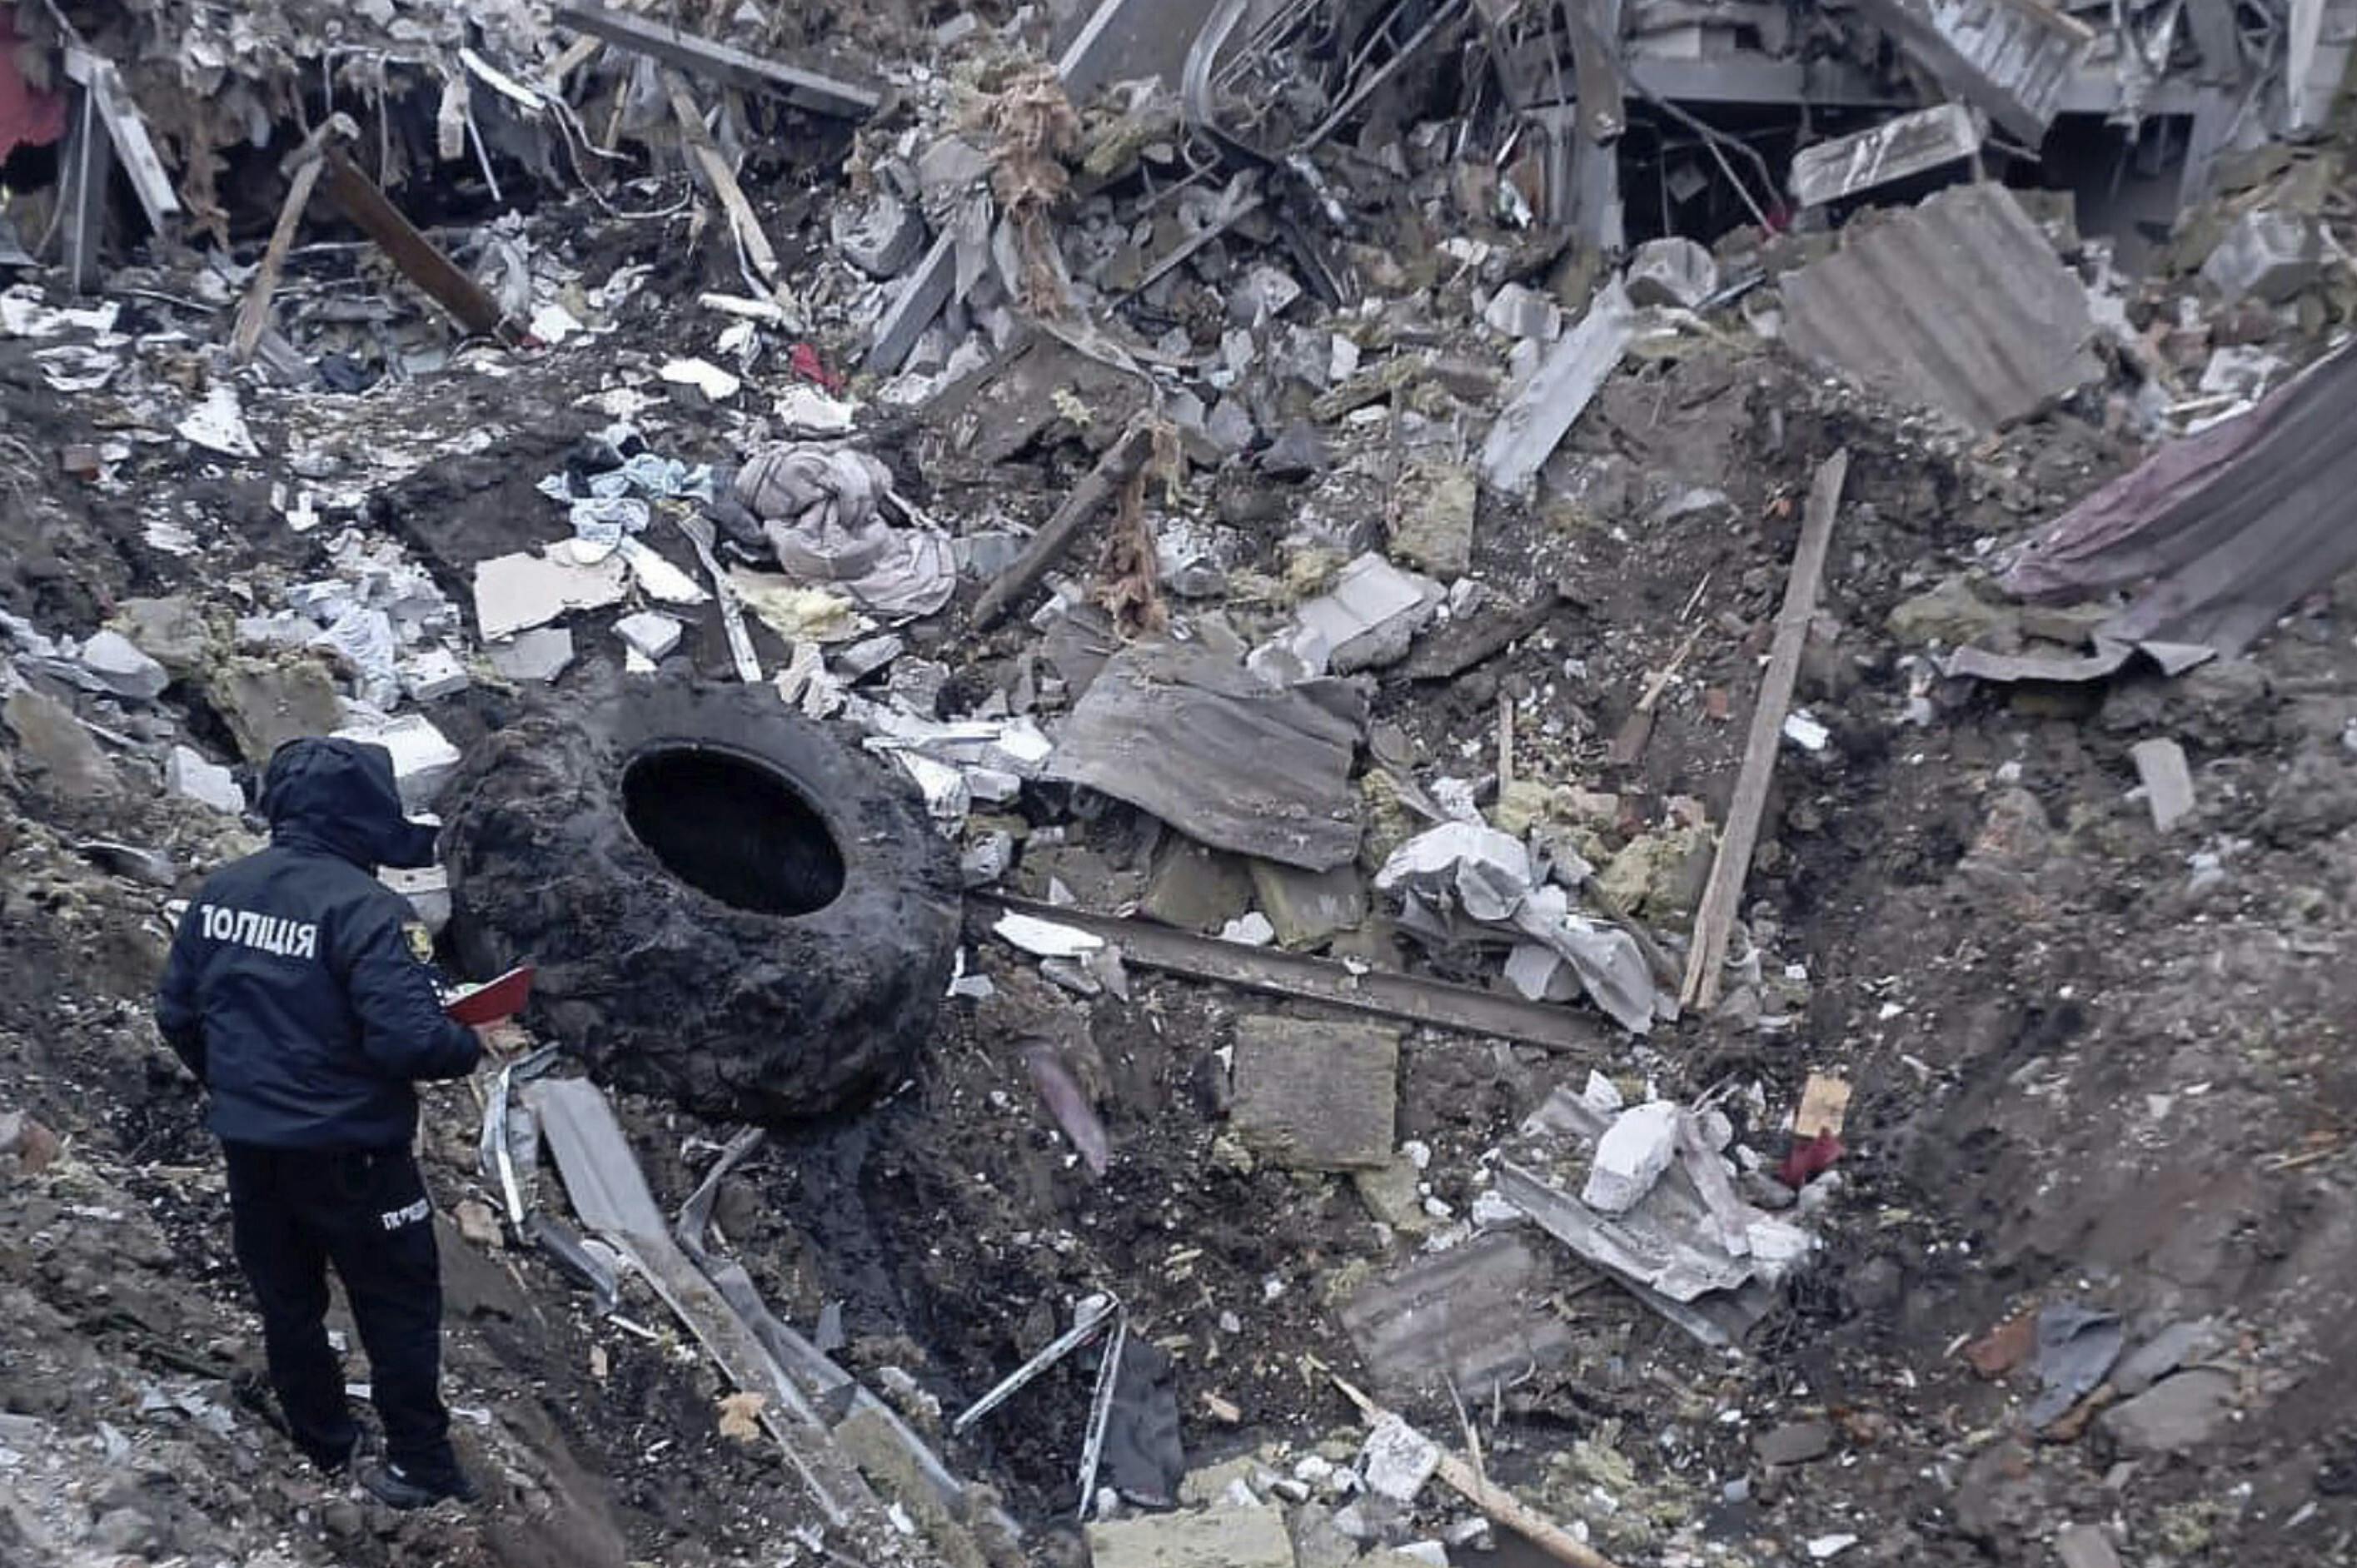 Nogle af ødelæggelserne besigtiges efter tirsdagens angreb i byen Zolotsjiv.